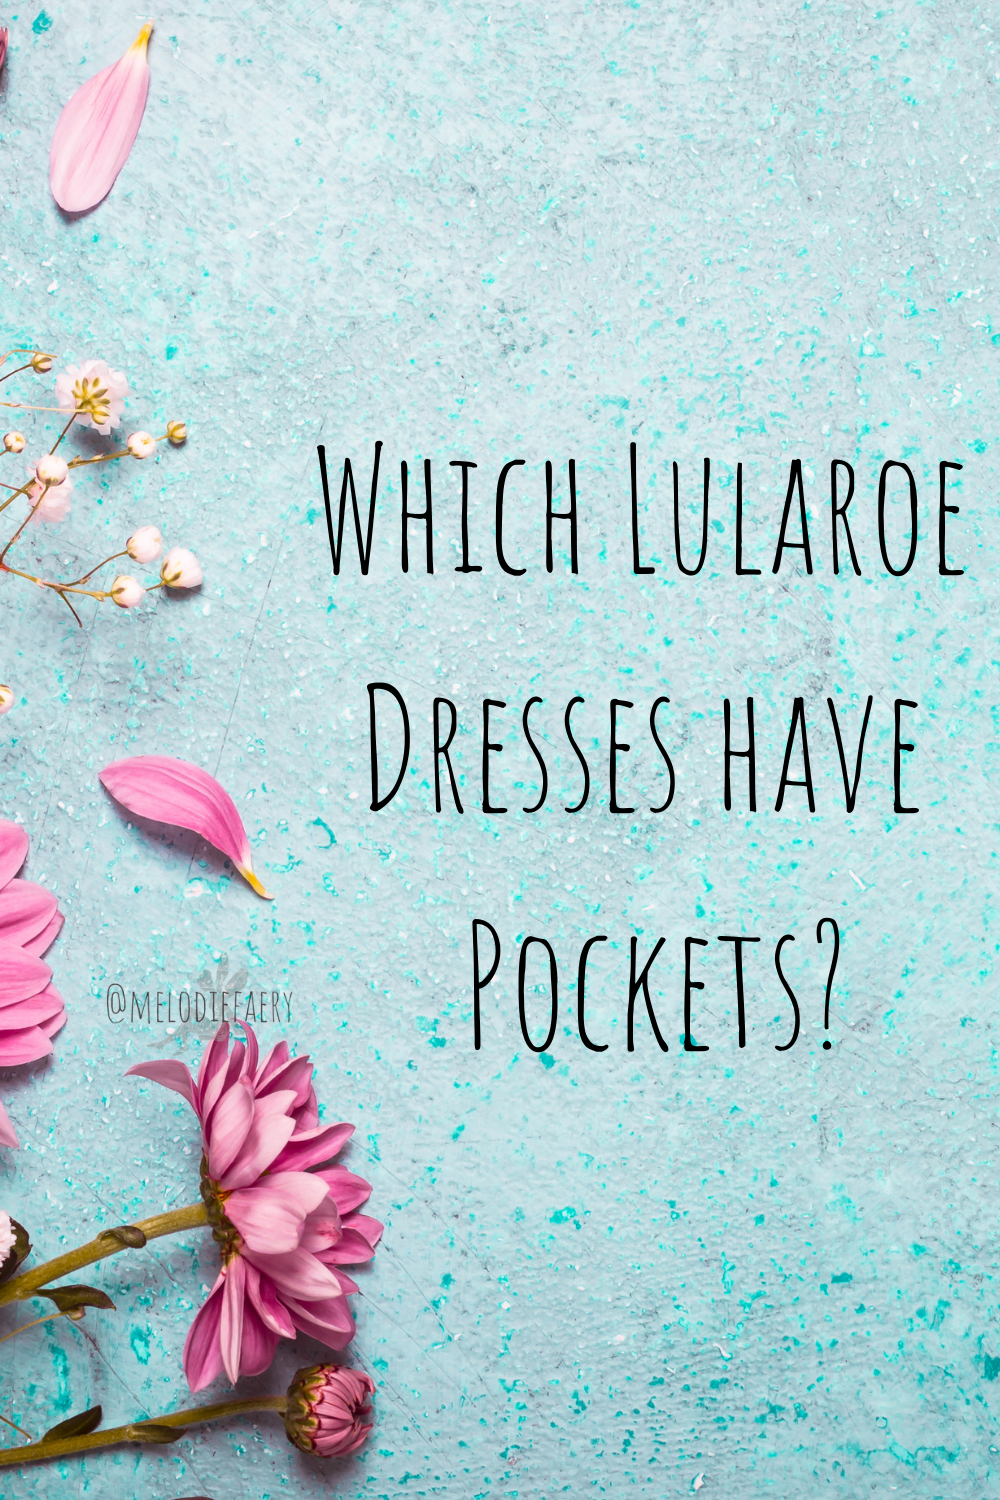 LuLaRoe, Dresses